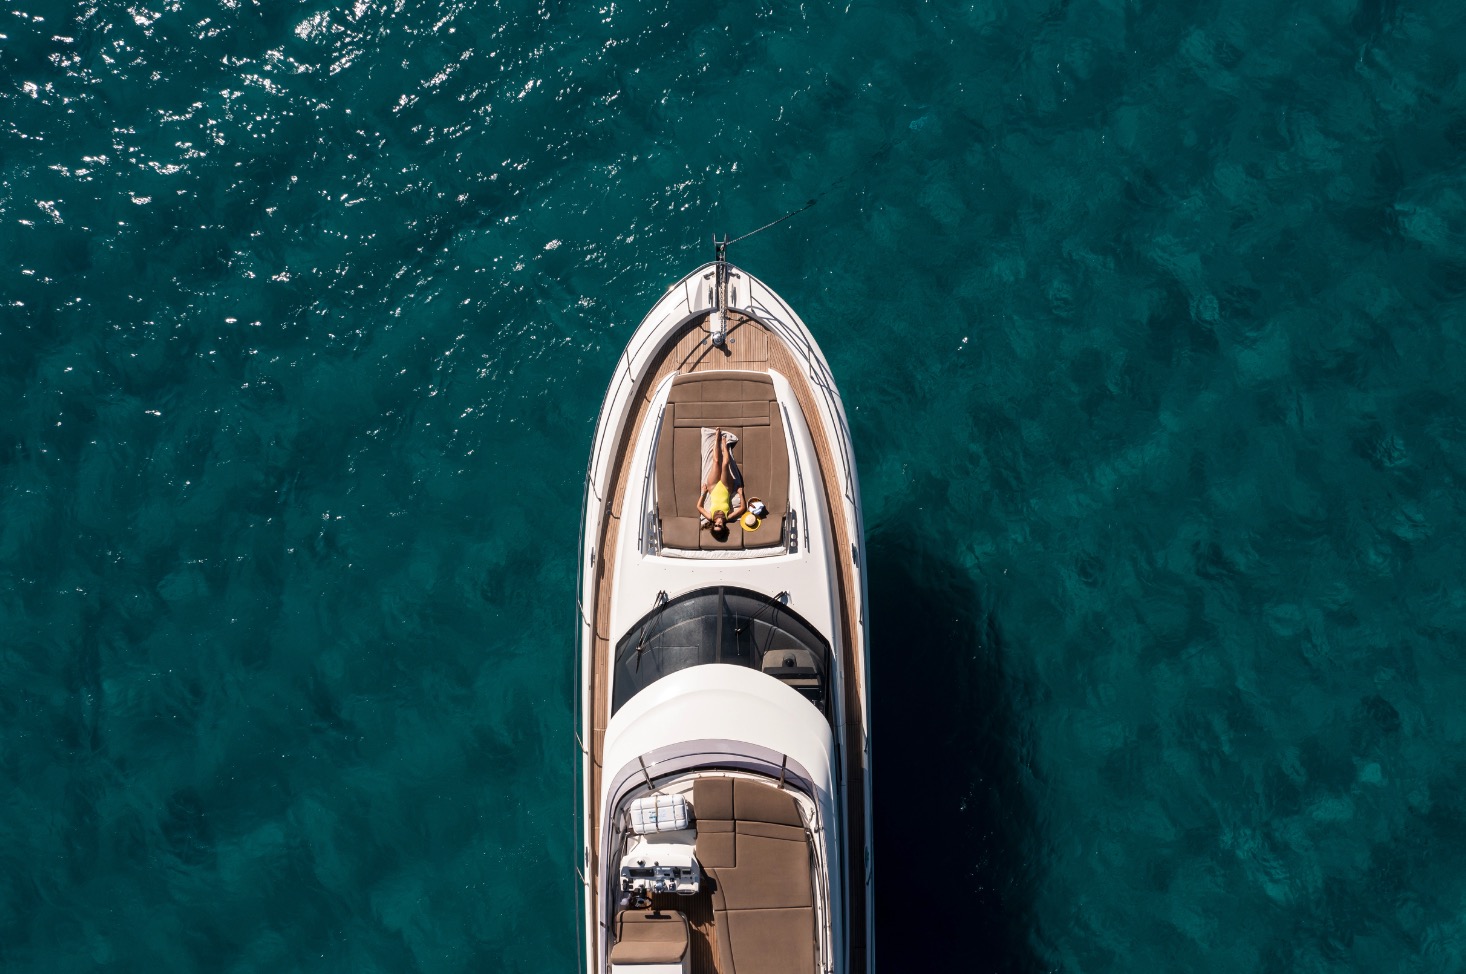 rent a yacht mykonos